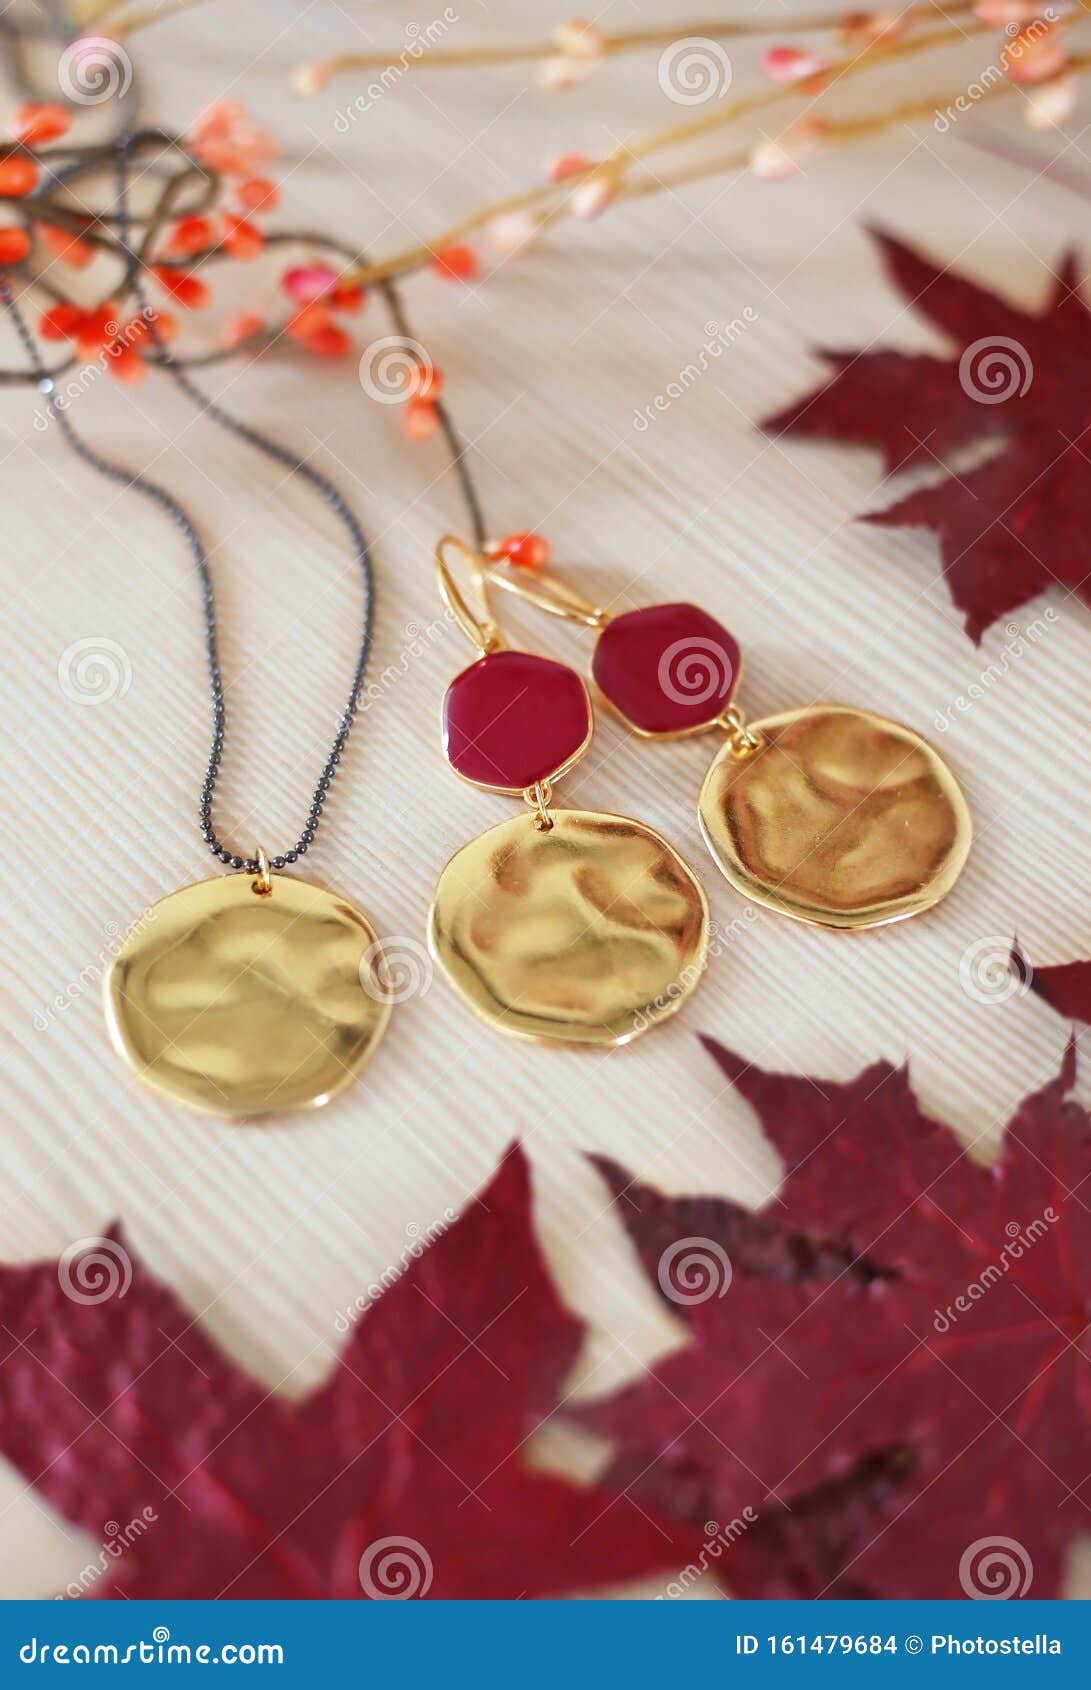 Goldene Ohrringe mit roten Steinen und Halsketten - rote Blätter auf HolzHintergrund. Stillleben der goldenen Ohrringe mit roten Steinen und Halsketten - rote Blätter auf Holzboden